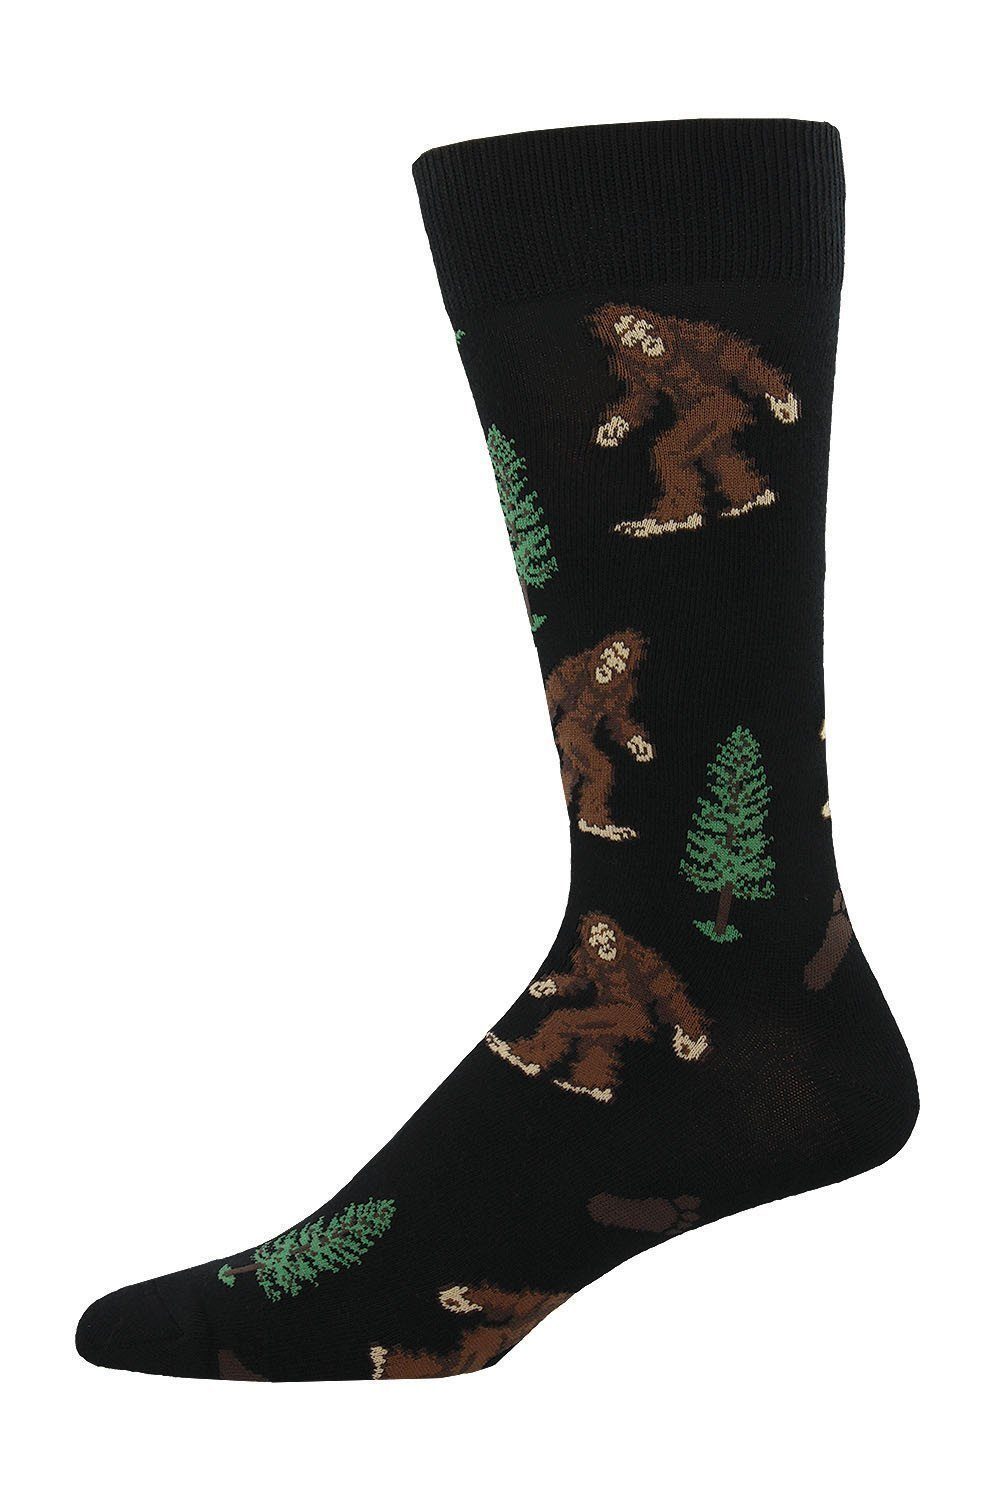 Socksmith - King Size Bigfoot Crew Socks | Men's - Knock Your Socks Off